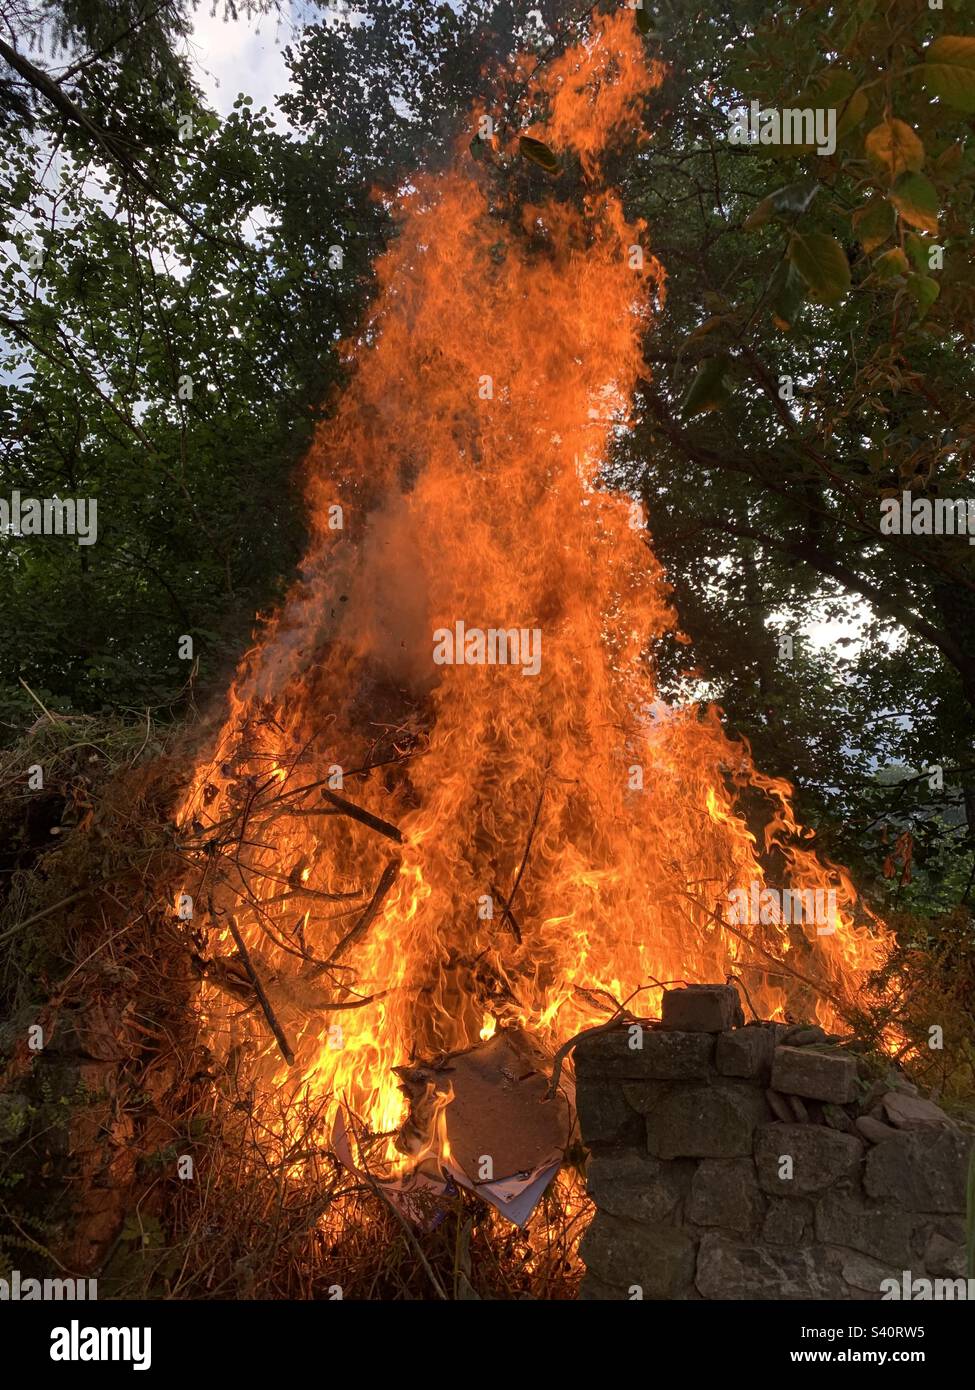 Riesiges Lagerfeuer im Garten, riesige heiße orangefarbene und rote Flammen springen vom Lagerfeuer Stockfoto